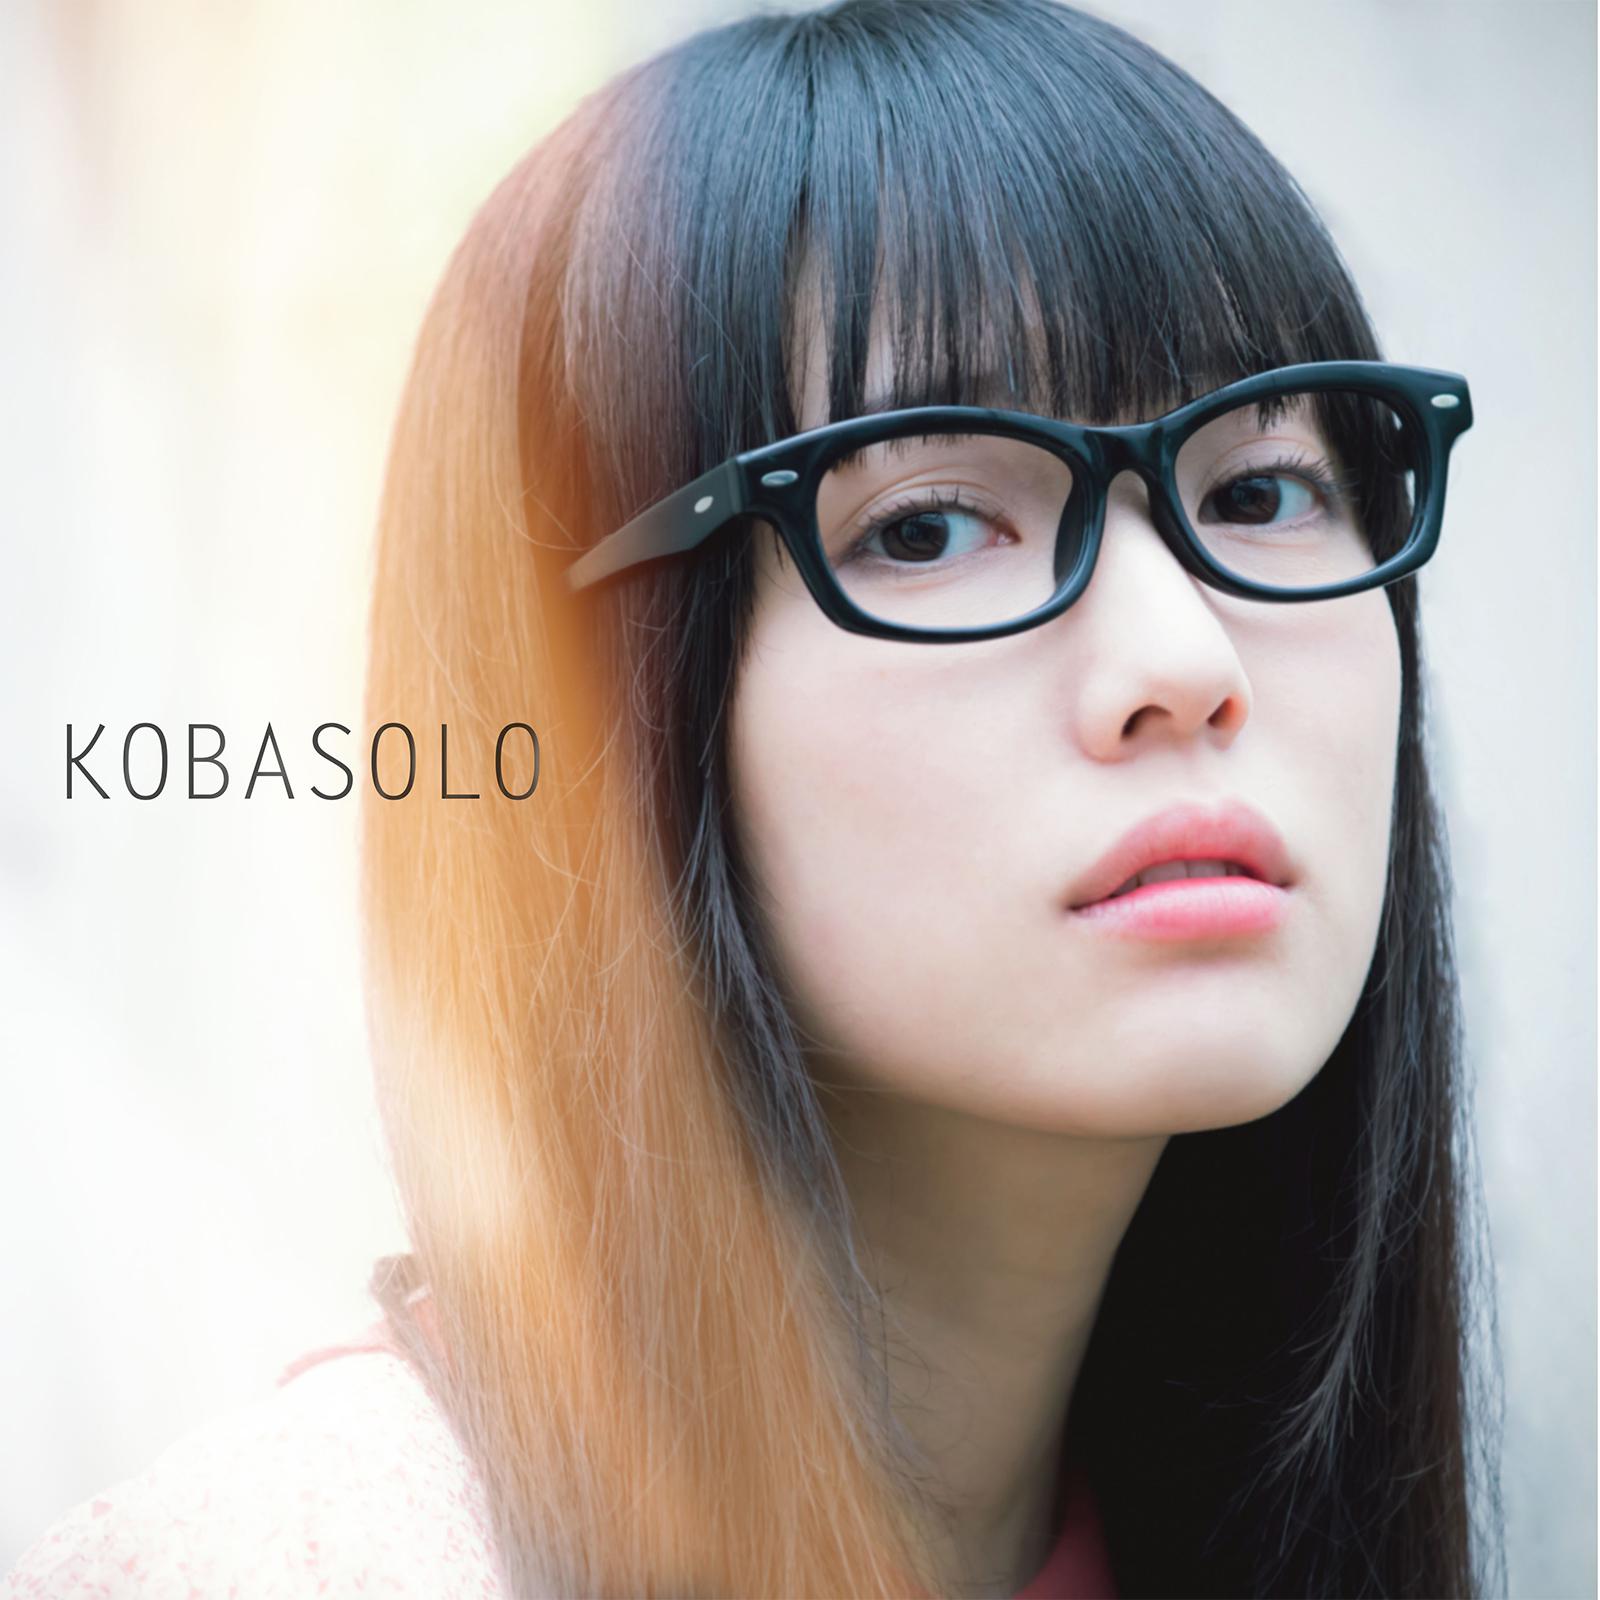 恋せよオトメ (feat. 春茶)歌词 歌手kobasolo / 春茶-专辑KOBASOLO-单曲《恋せよオトメ (feat. 春茶)》LRC歌词下载